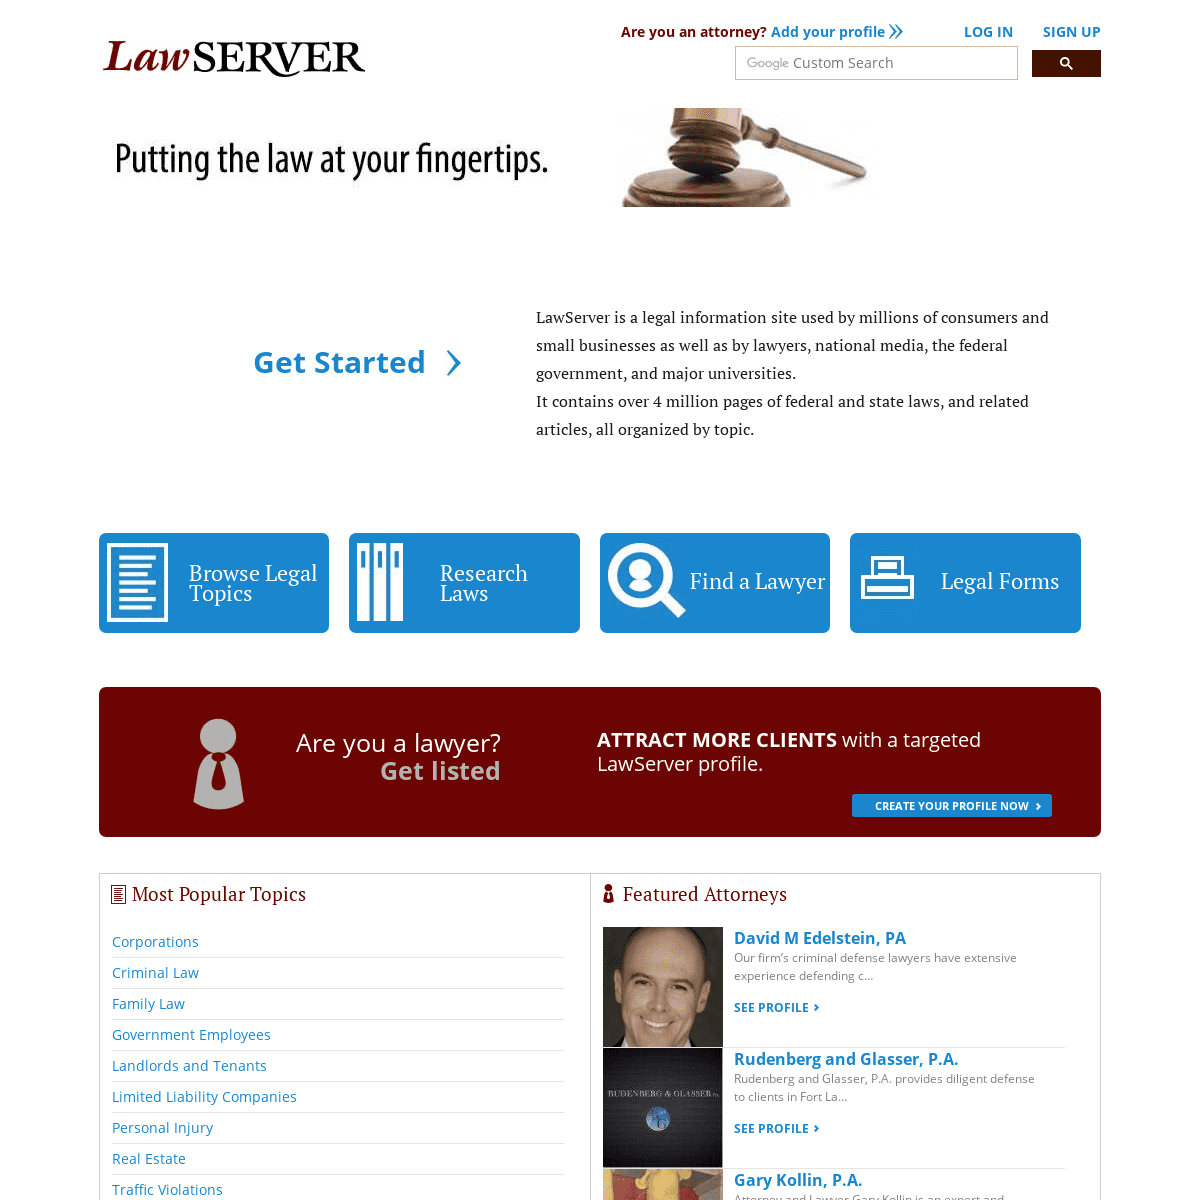 A complete backup of lawserver.com